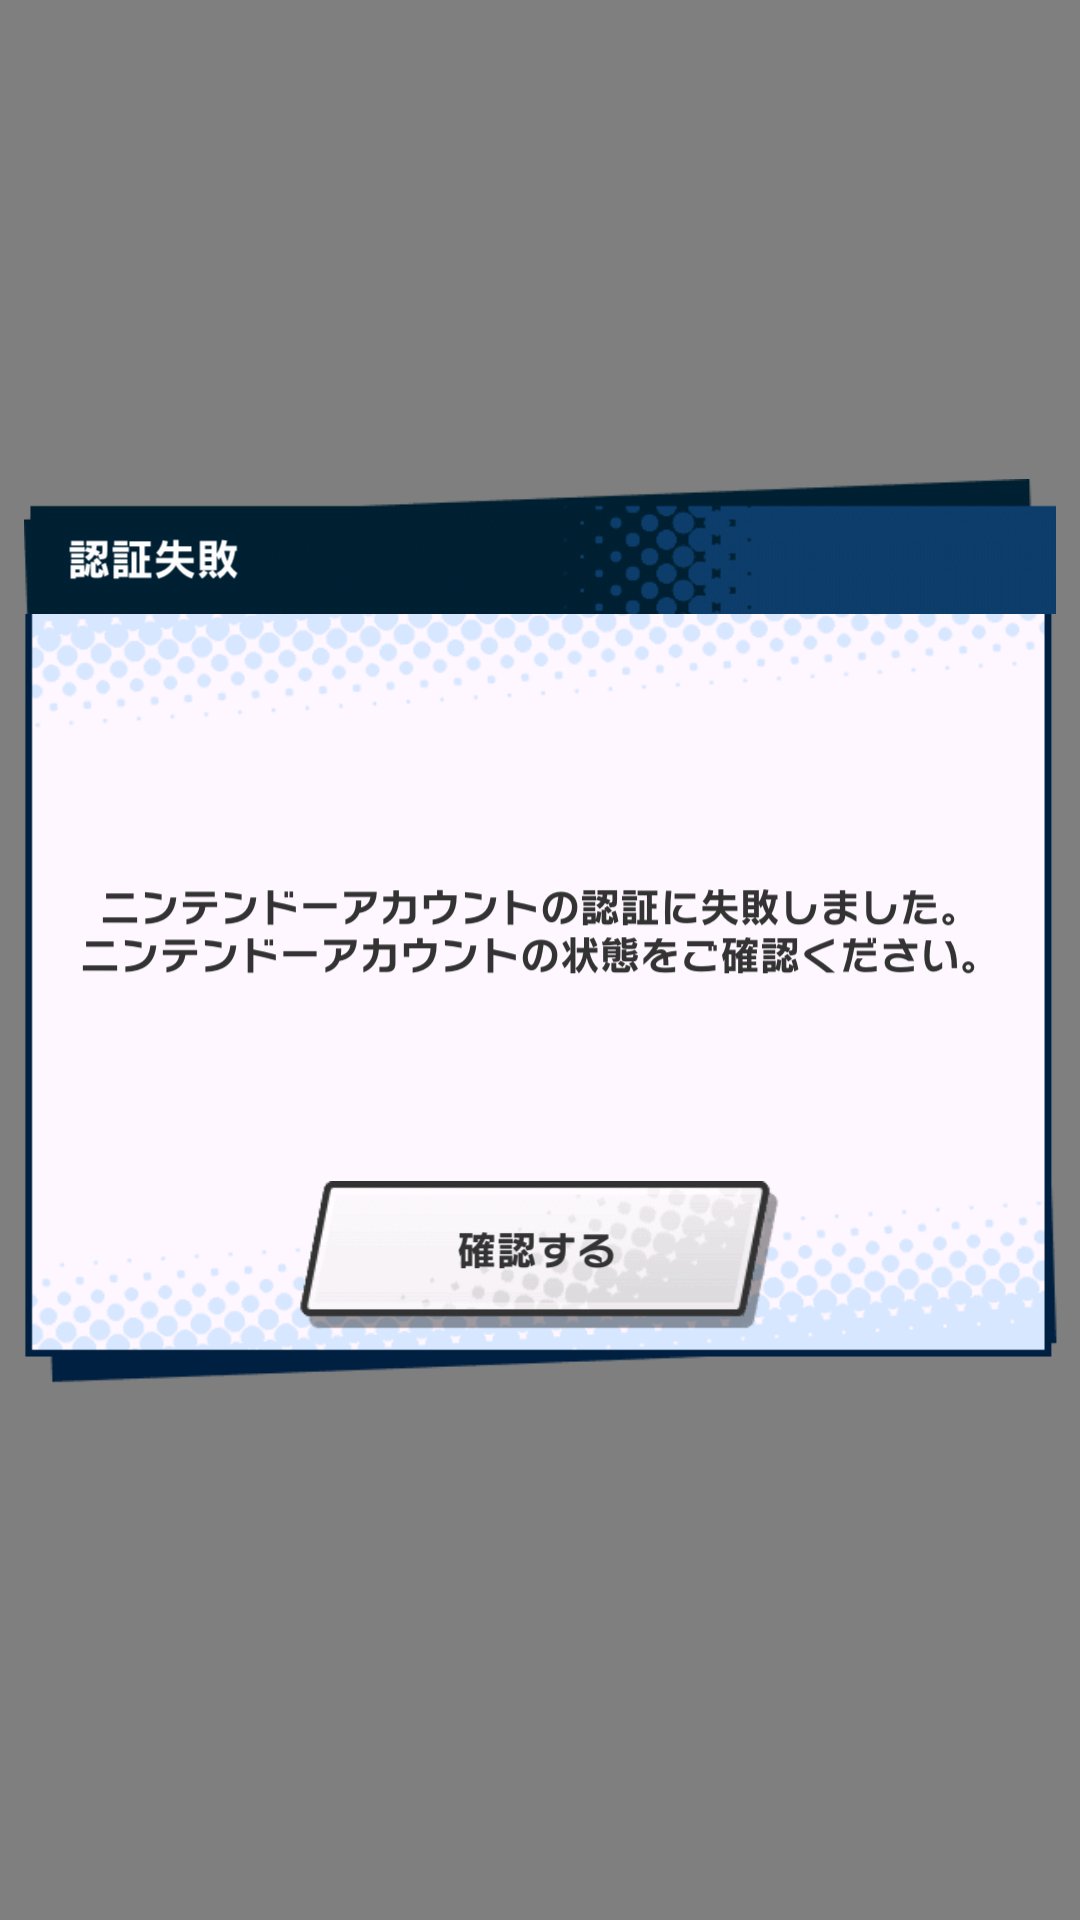 ニンテンドーアカウントの認証に失敗しました プログラム 日本の無料ブログ